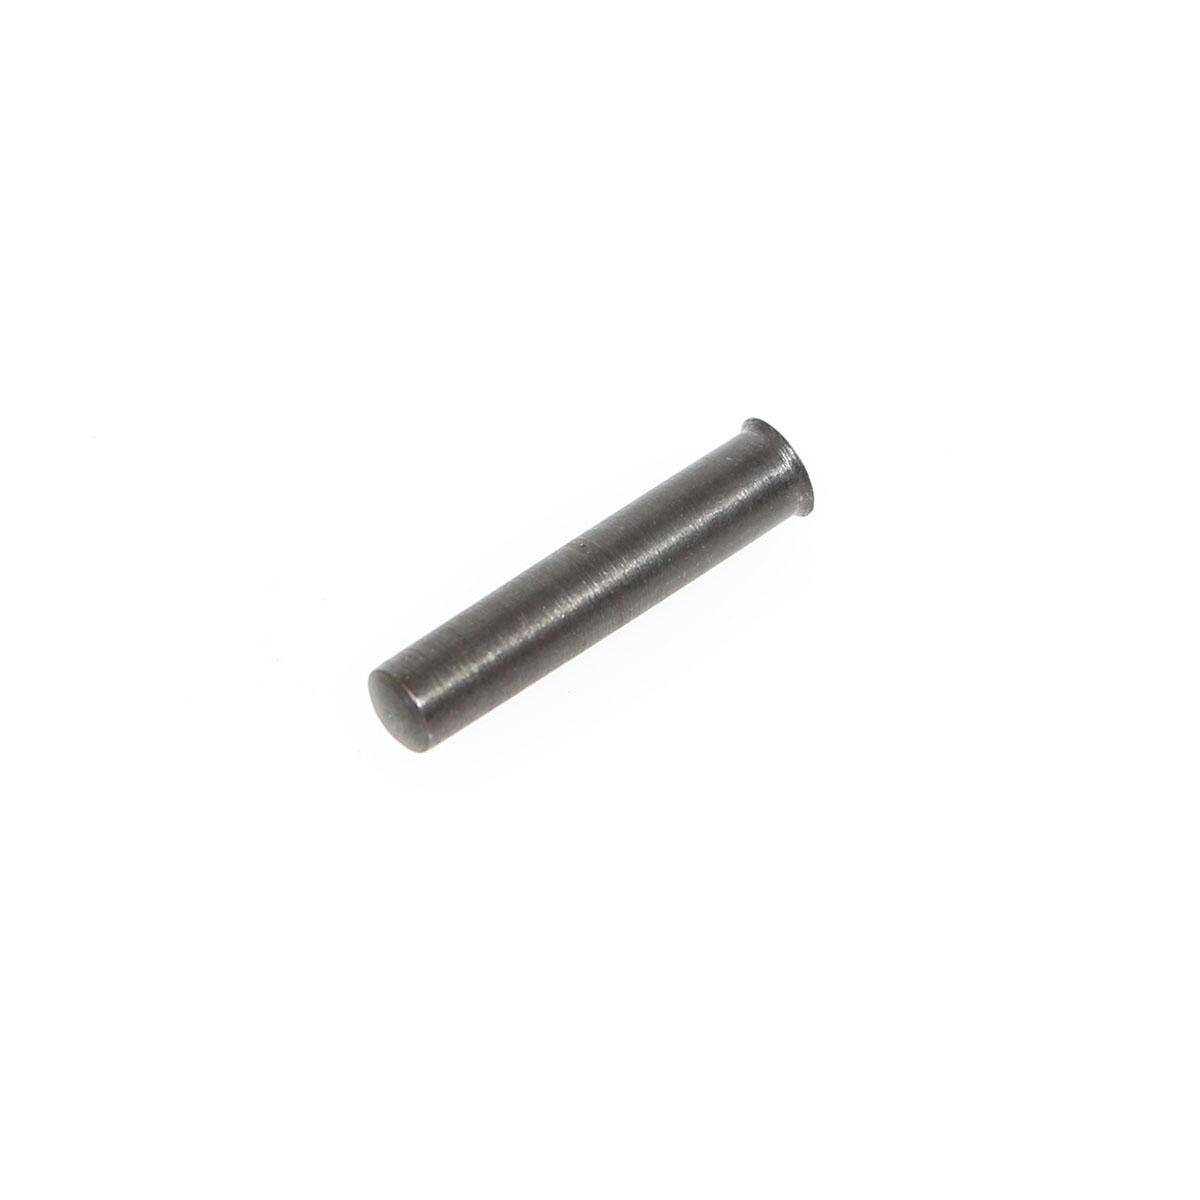 Bul Armory Hammer Pin 1911/2011